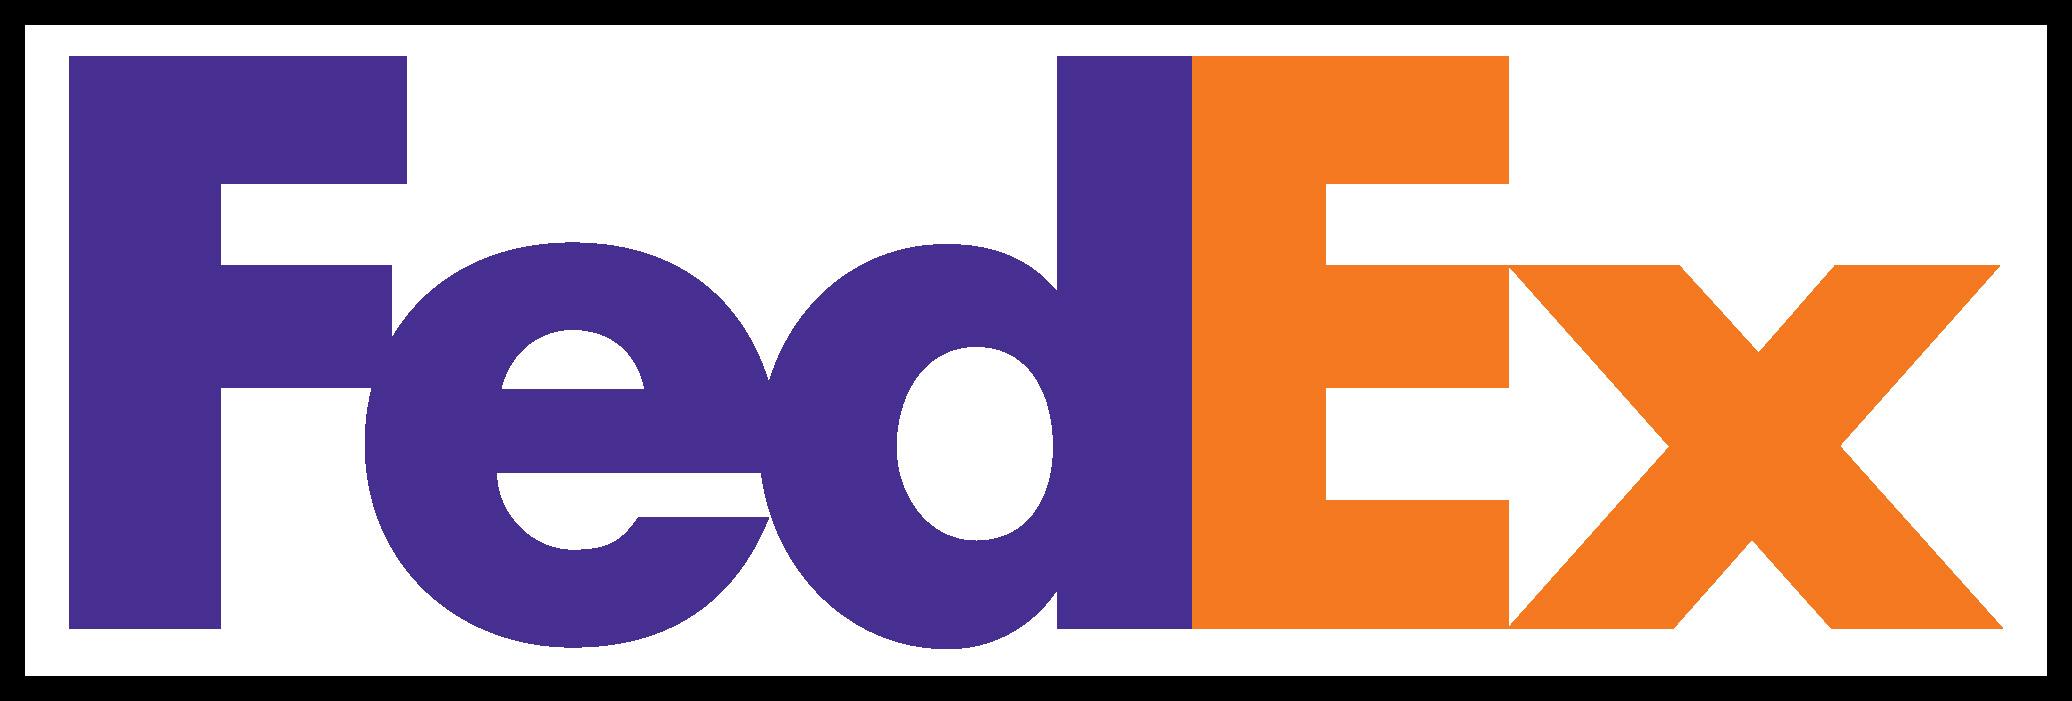 FedEx Logo - Fedex Logos